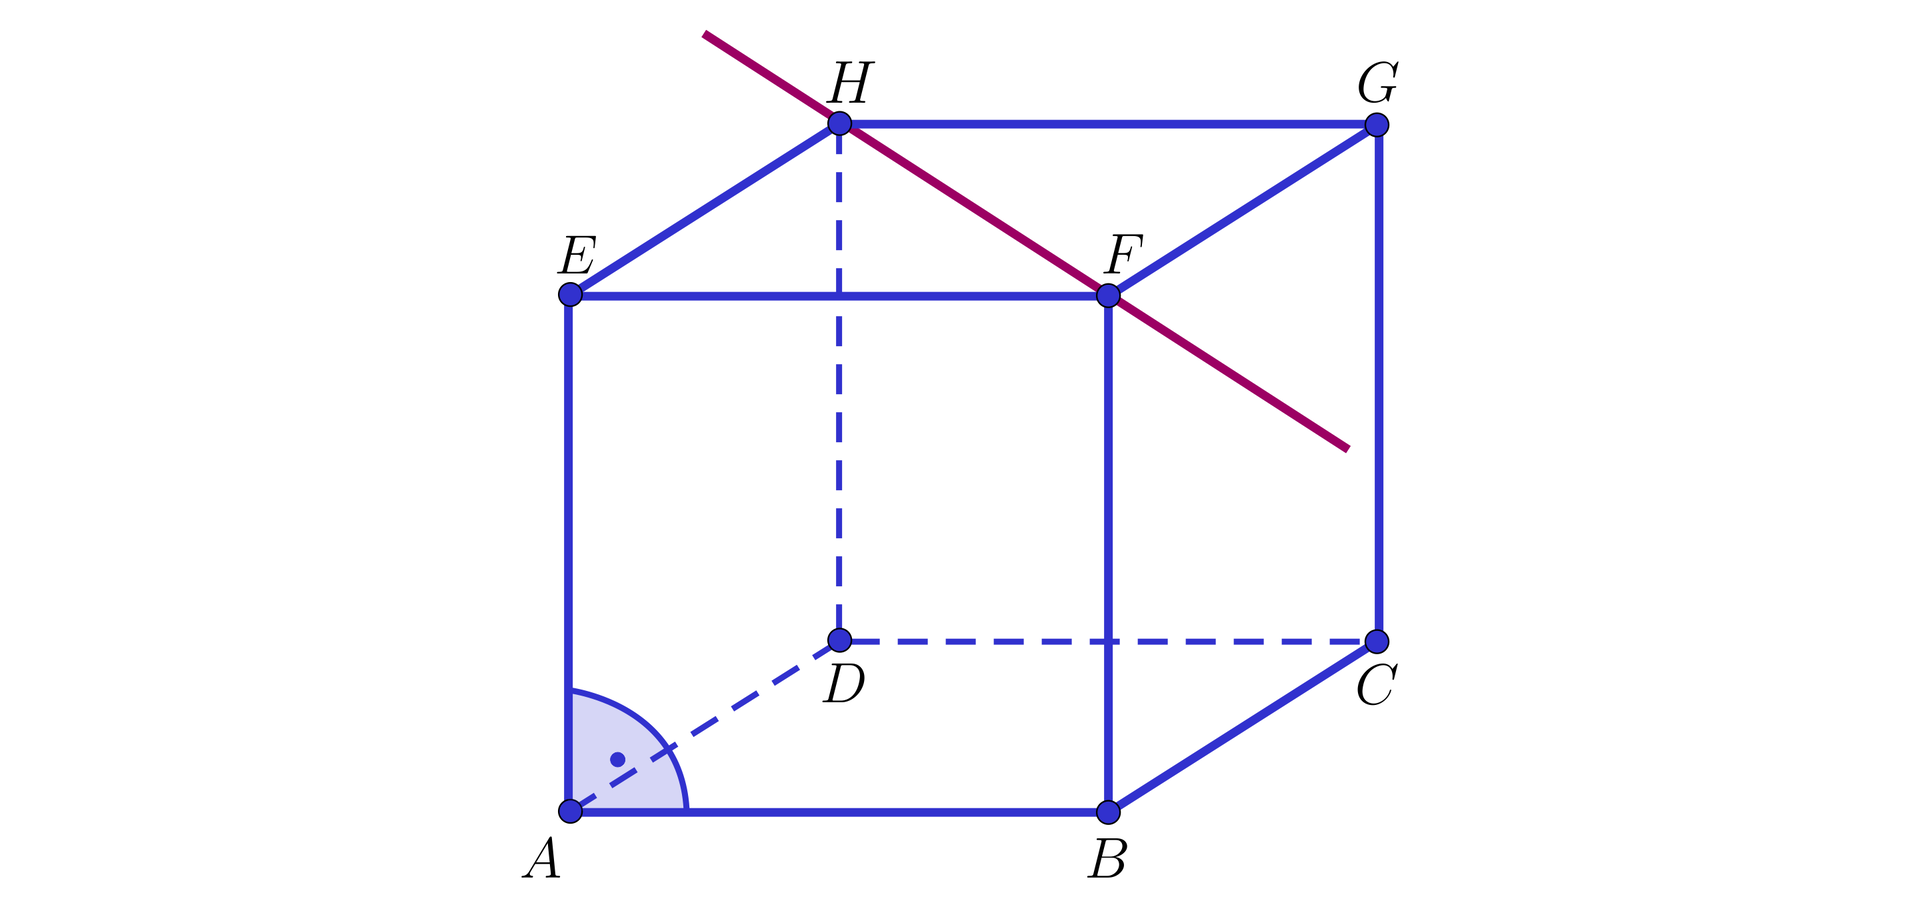 Ilustracja przedstawia sześcian A B C D E F G H, gdzie wierzchołek E znajduje się nad A, wierzchołek F nad B, wierzchołek G nad C, wierzchołek H nad D. Punkty F oraz H zostały złączone czerwoną prostą. 